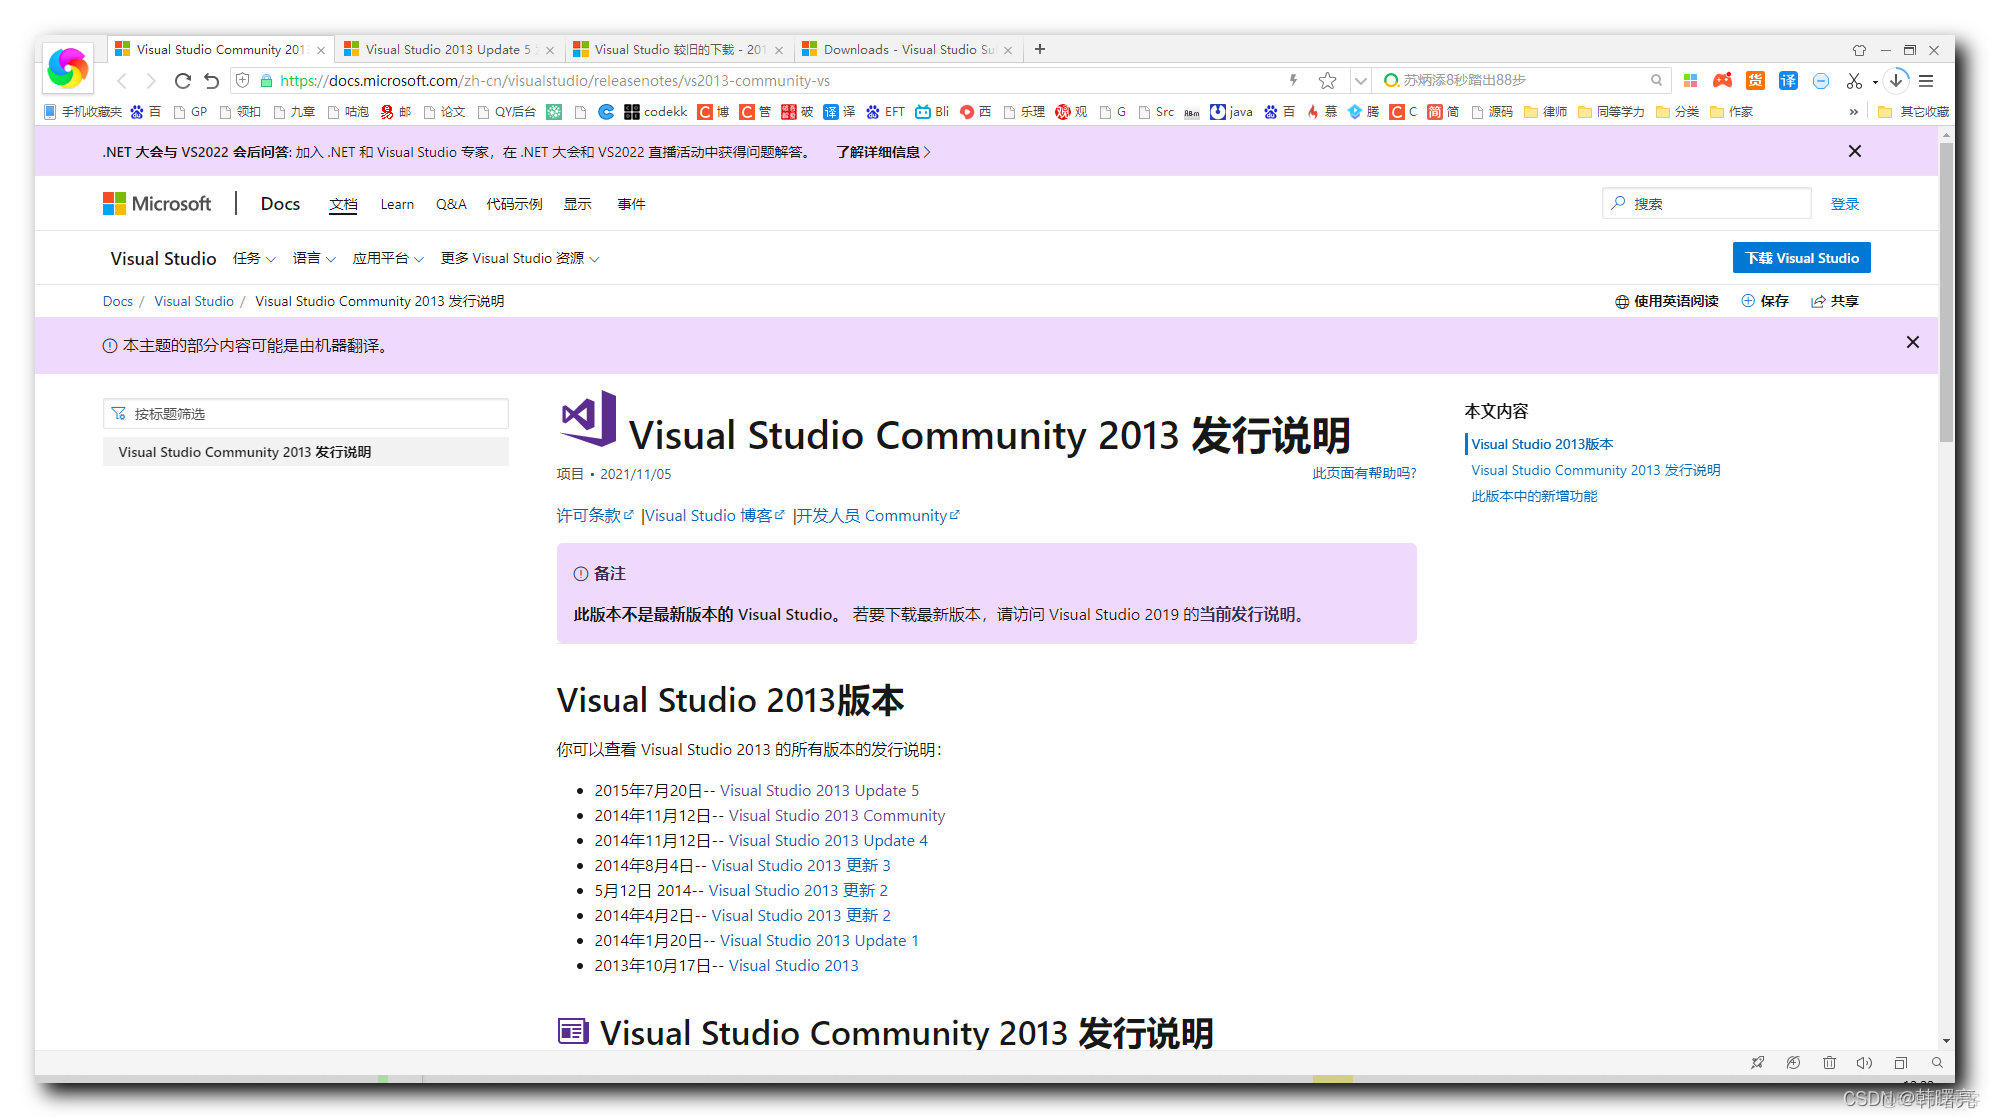 开发环境】安装Visual Studio Community 2013 开发环境( 下载Visual Studio Community 2013  with Update 5 版本的安装包)_51CTO博客_visual studio集成开发环境